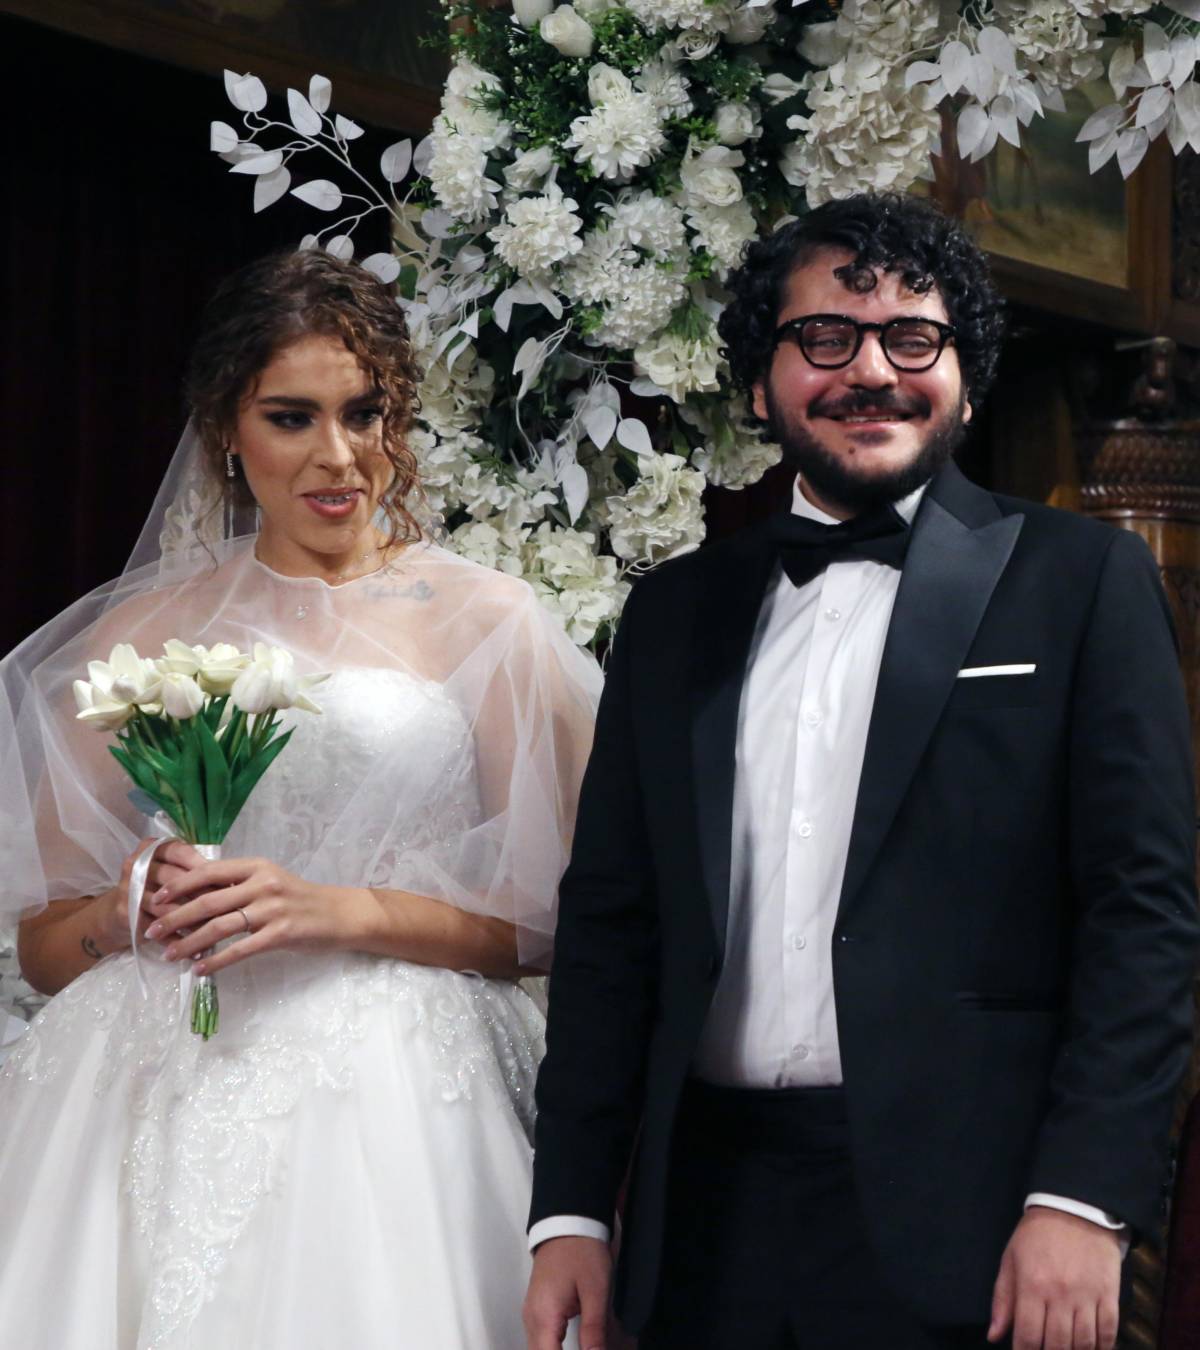 Patrick Zaki si è sposato al Cairo: matrimonio con rito copto ortodosso